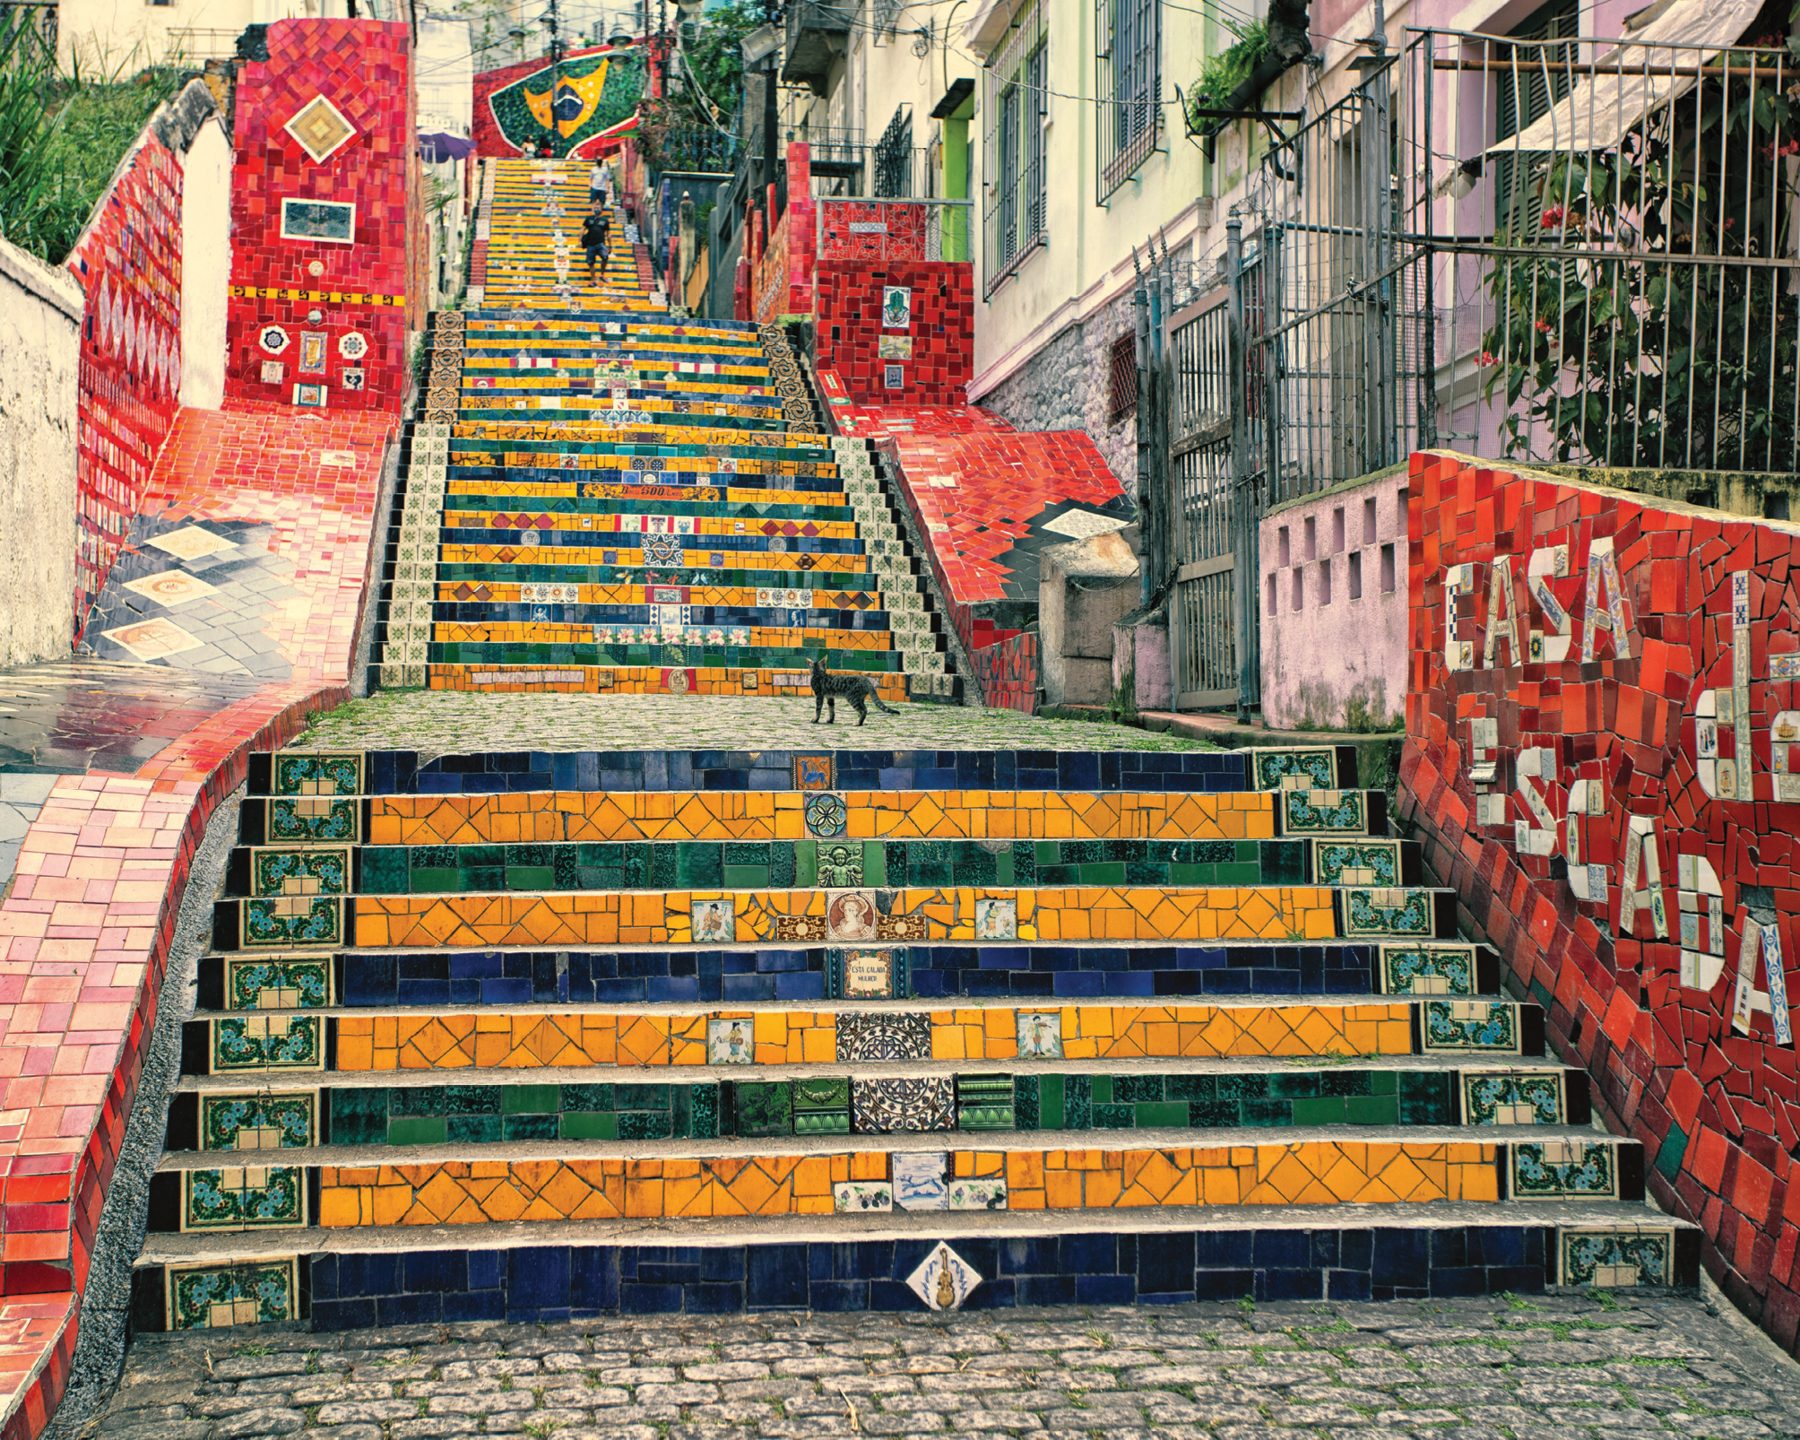 Fotografia. Destaque de uma escadaria com mosaicos amarelos, verdes e azuis nos espelhos dos degraus. Nas paredes, mosaicos  vermelhos com detalhes coloridos.